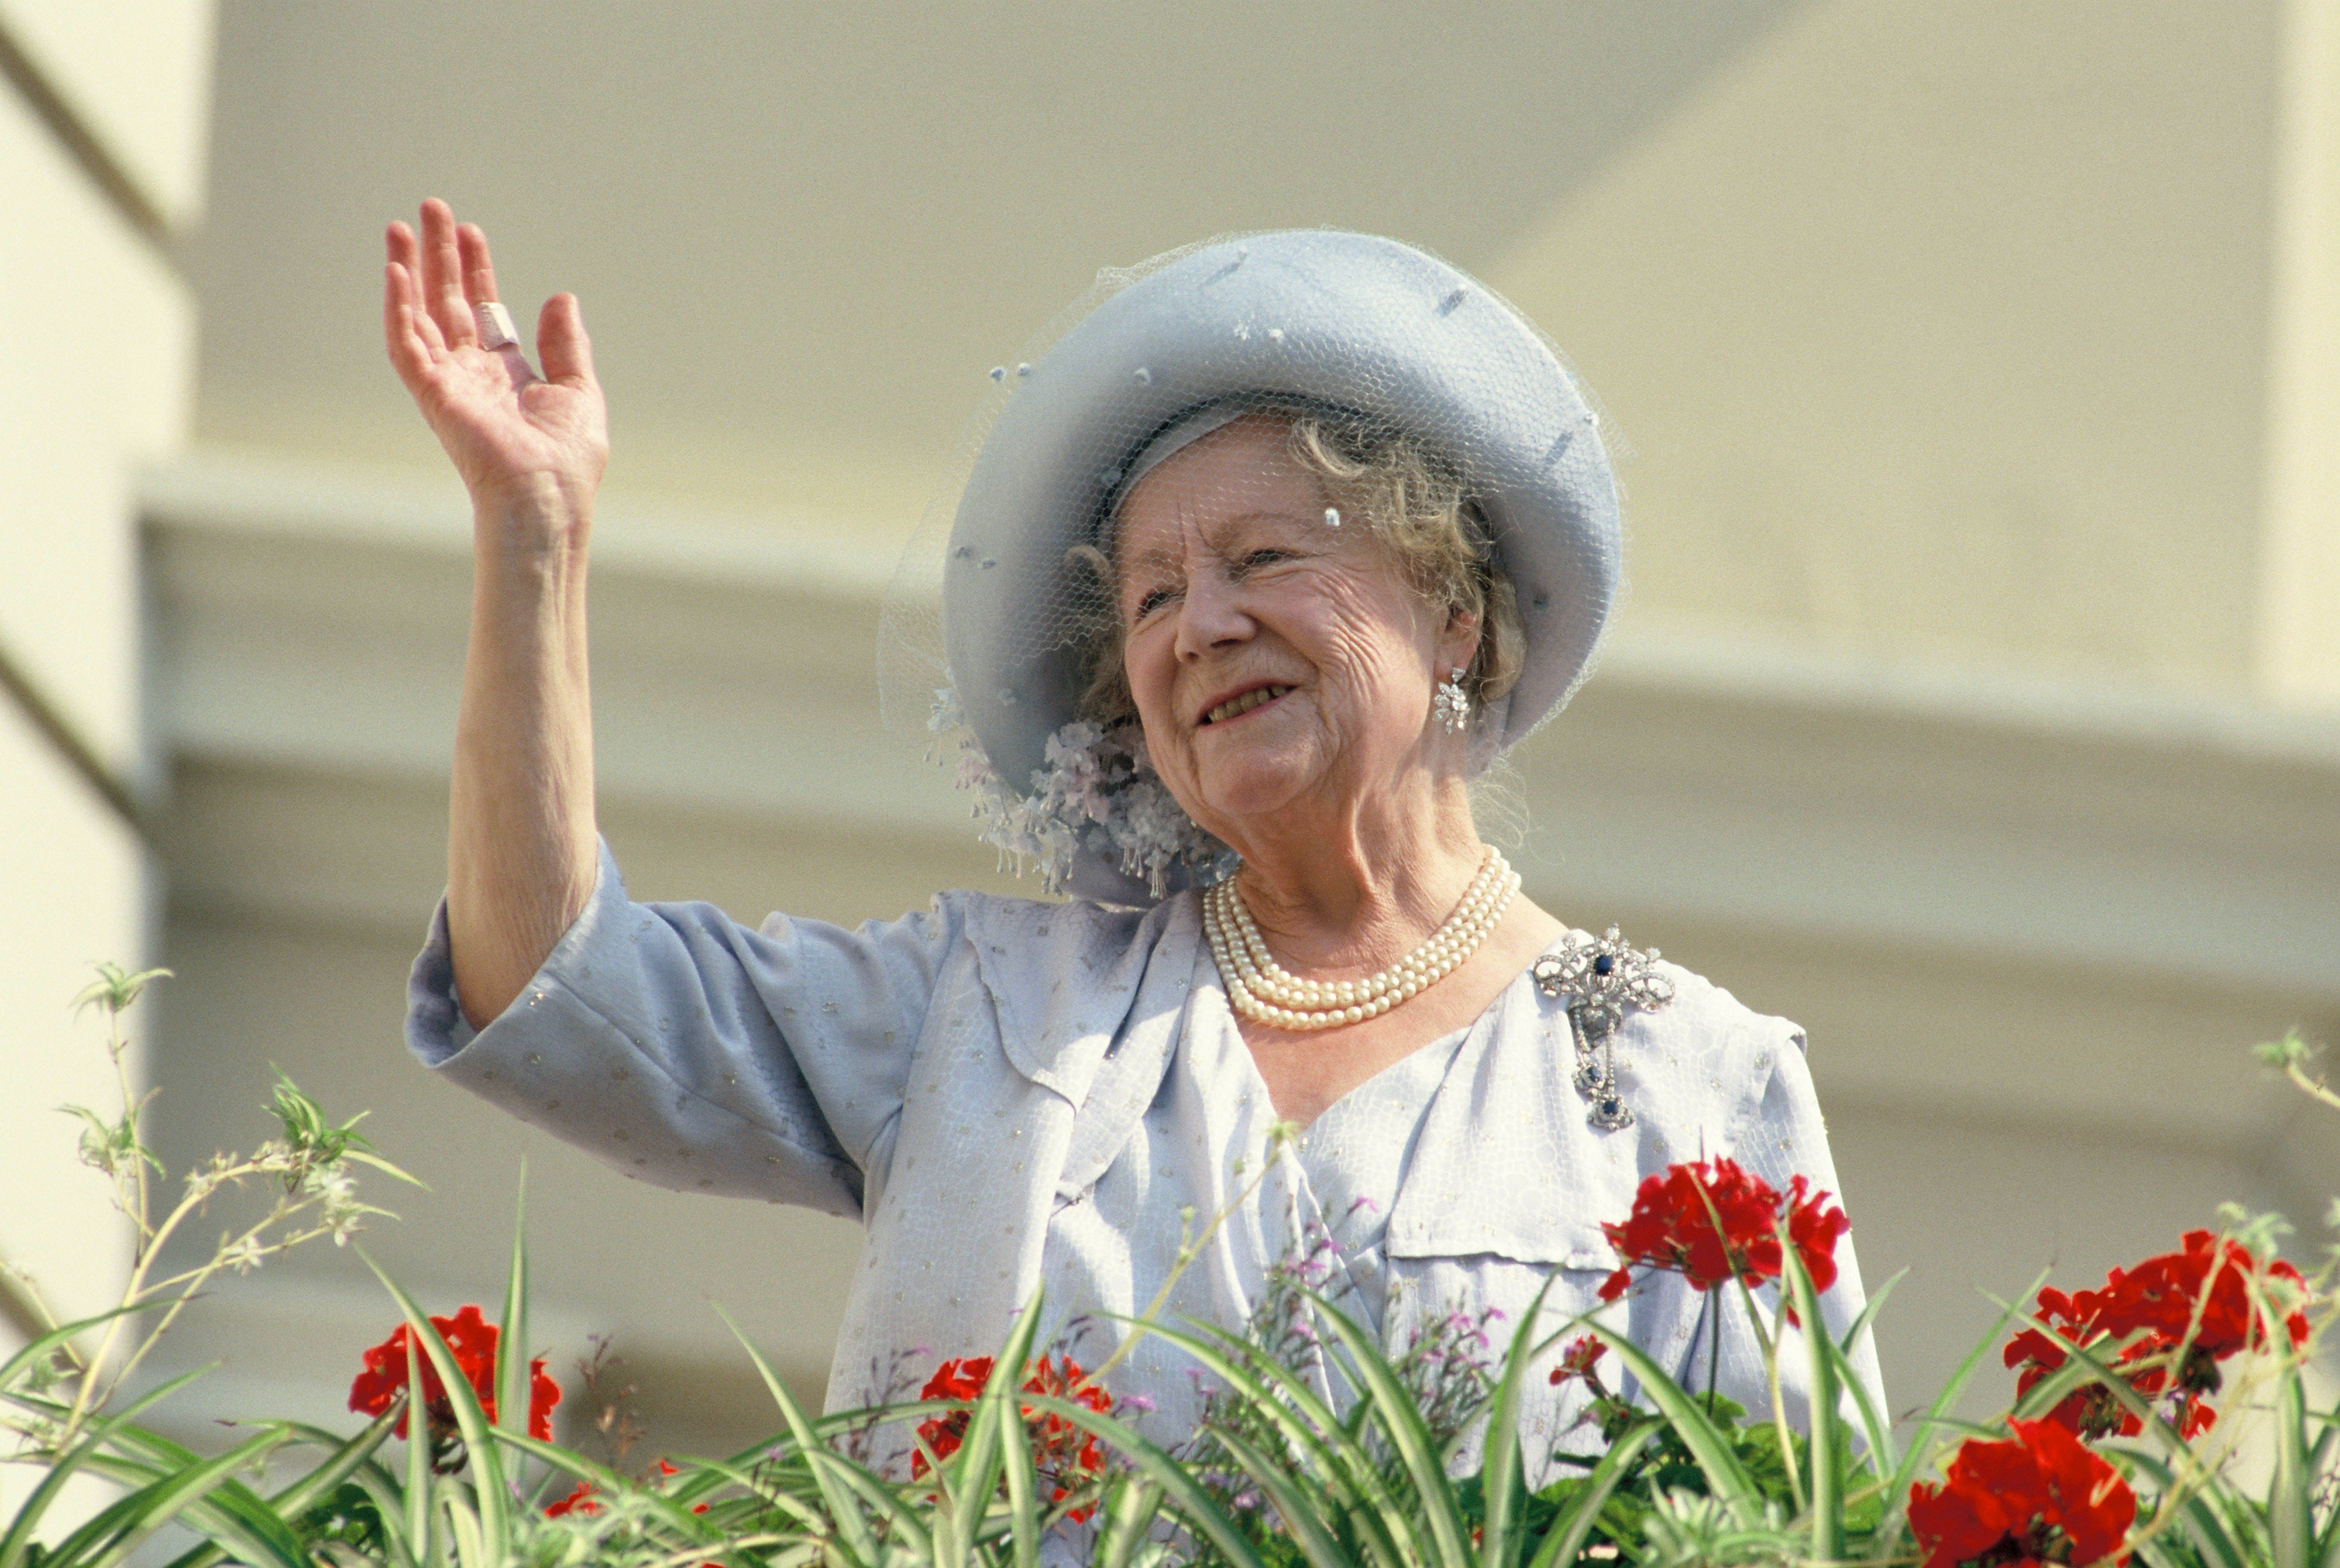 Die Königinmutter winkt den Gratulanten während der Feier zu ihrem 90. Geburtstag am 4. August 1990 in London, England | Quelle: Getty Images